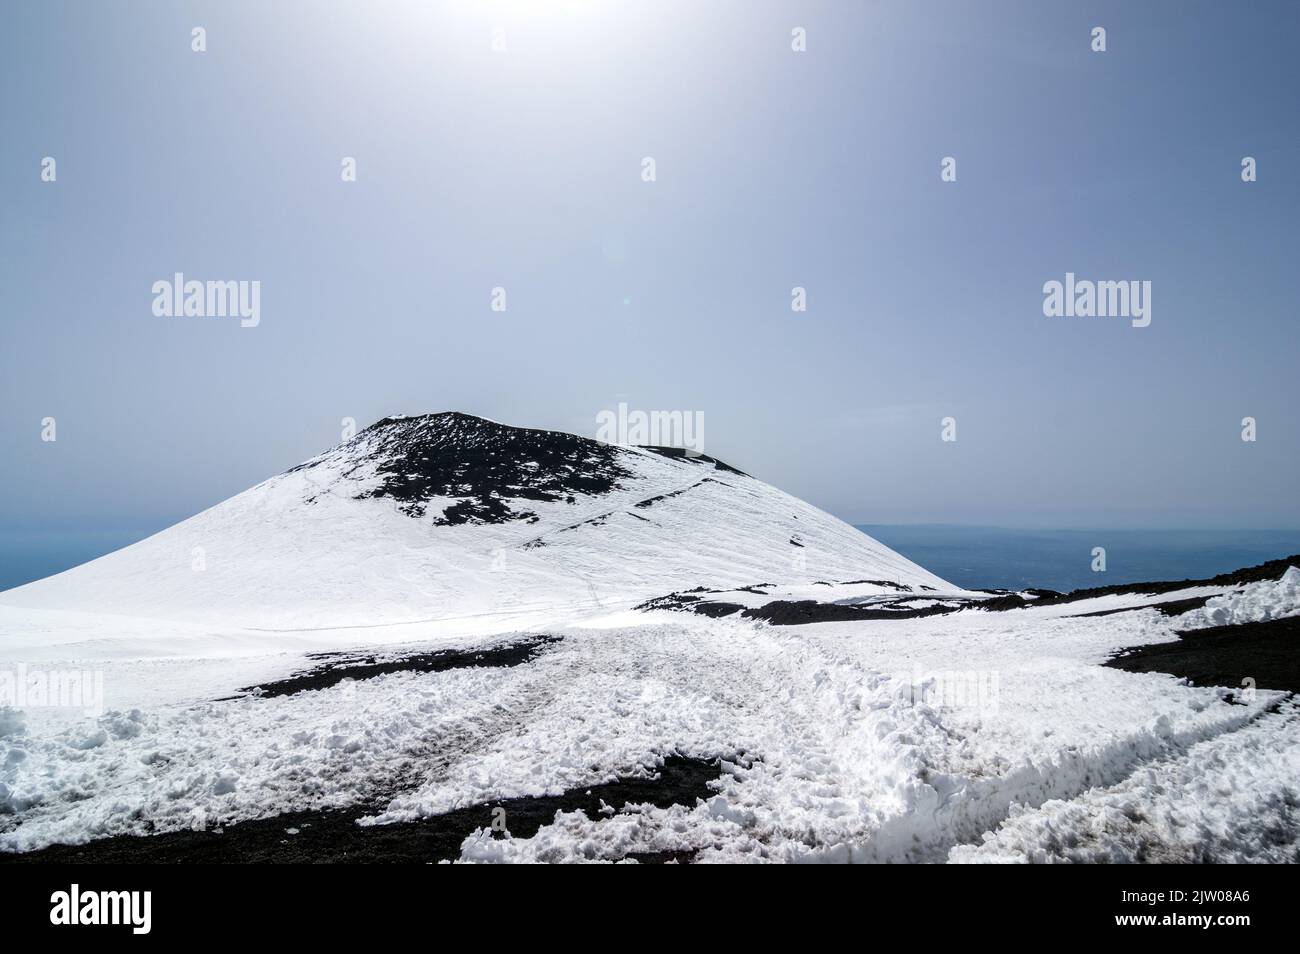 Herrliche Aussicht von oben auf den Vulkan Ätna Krater in der Stadt Catania, Sizilien Insel Sicilia, Italia Europe Stockfoto